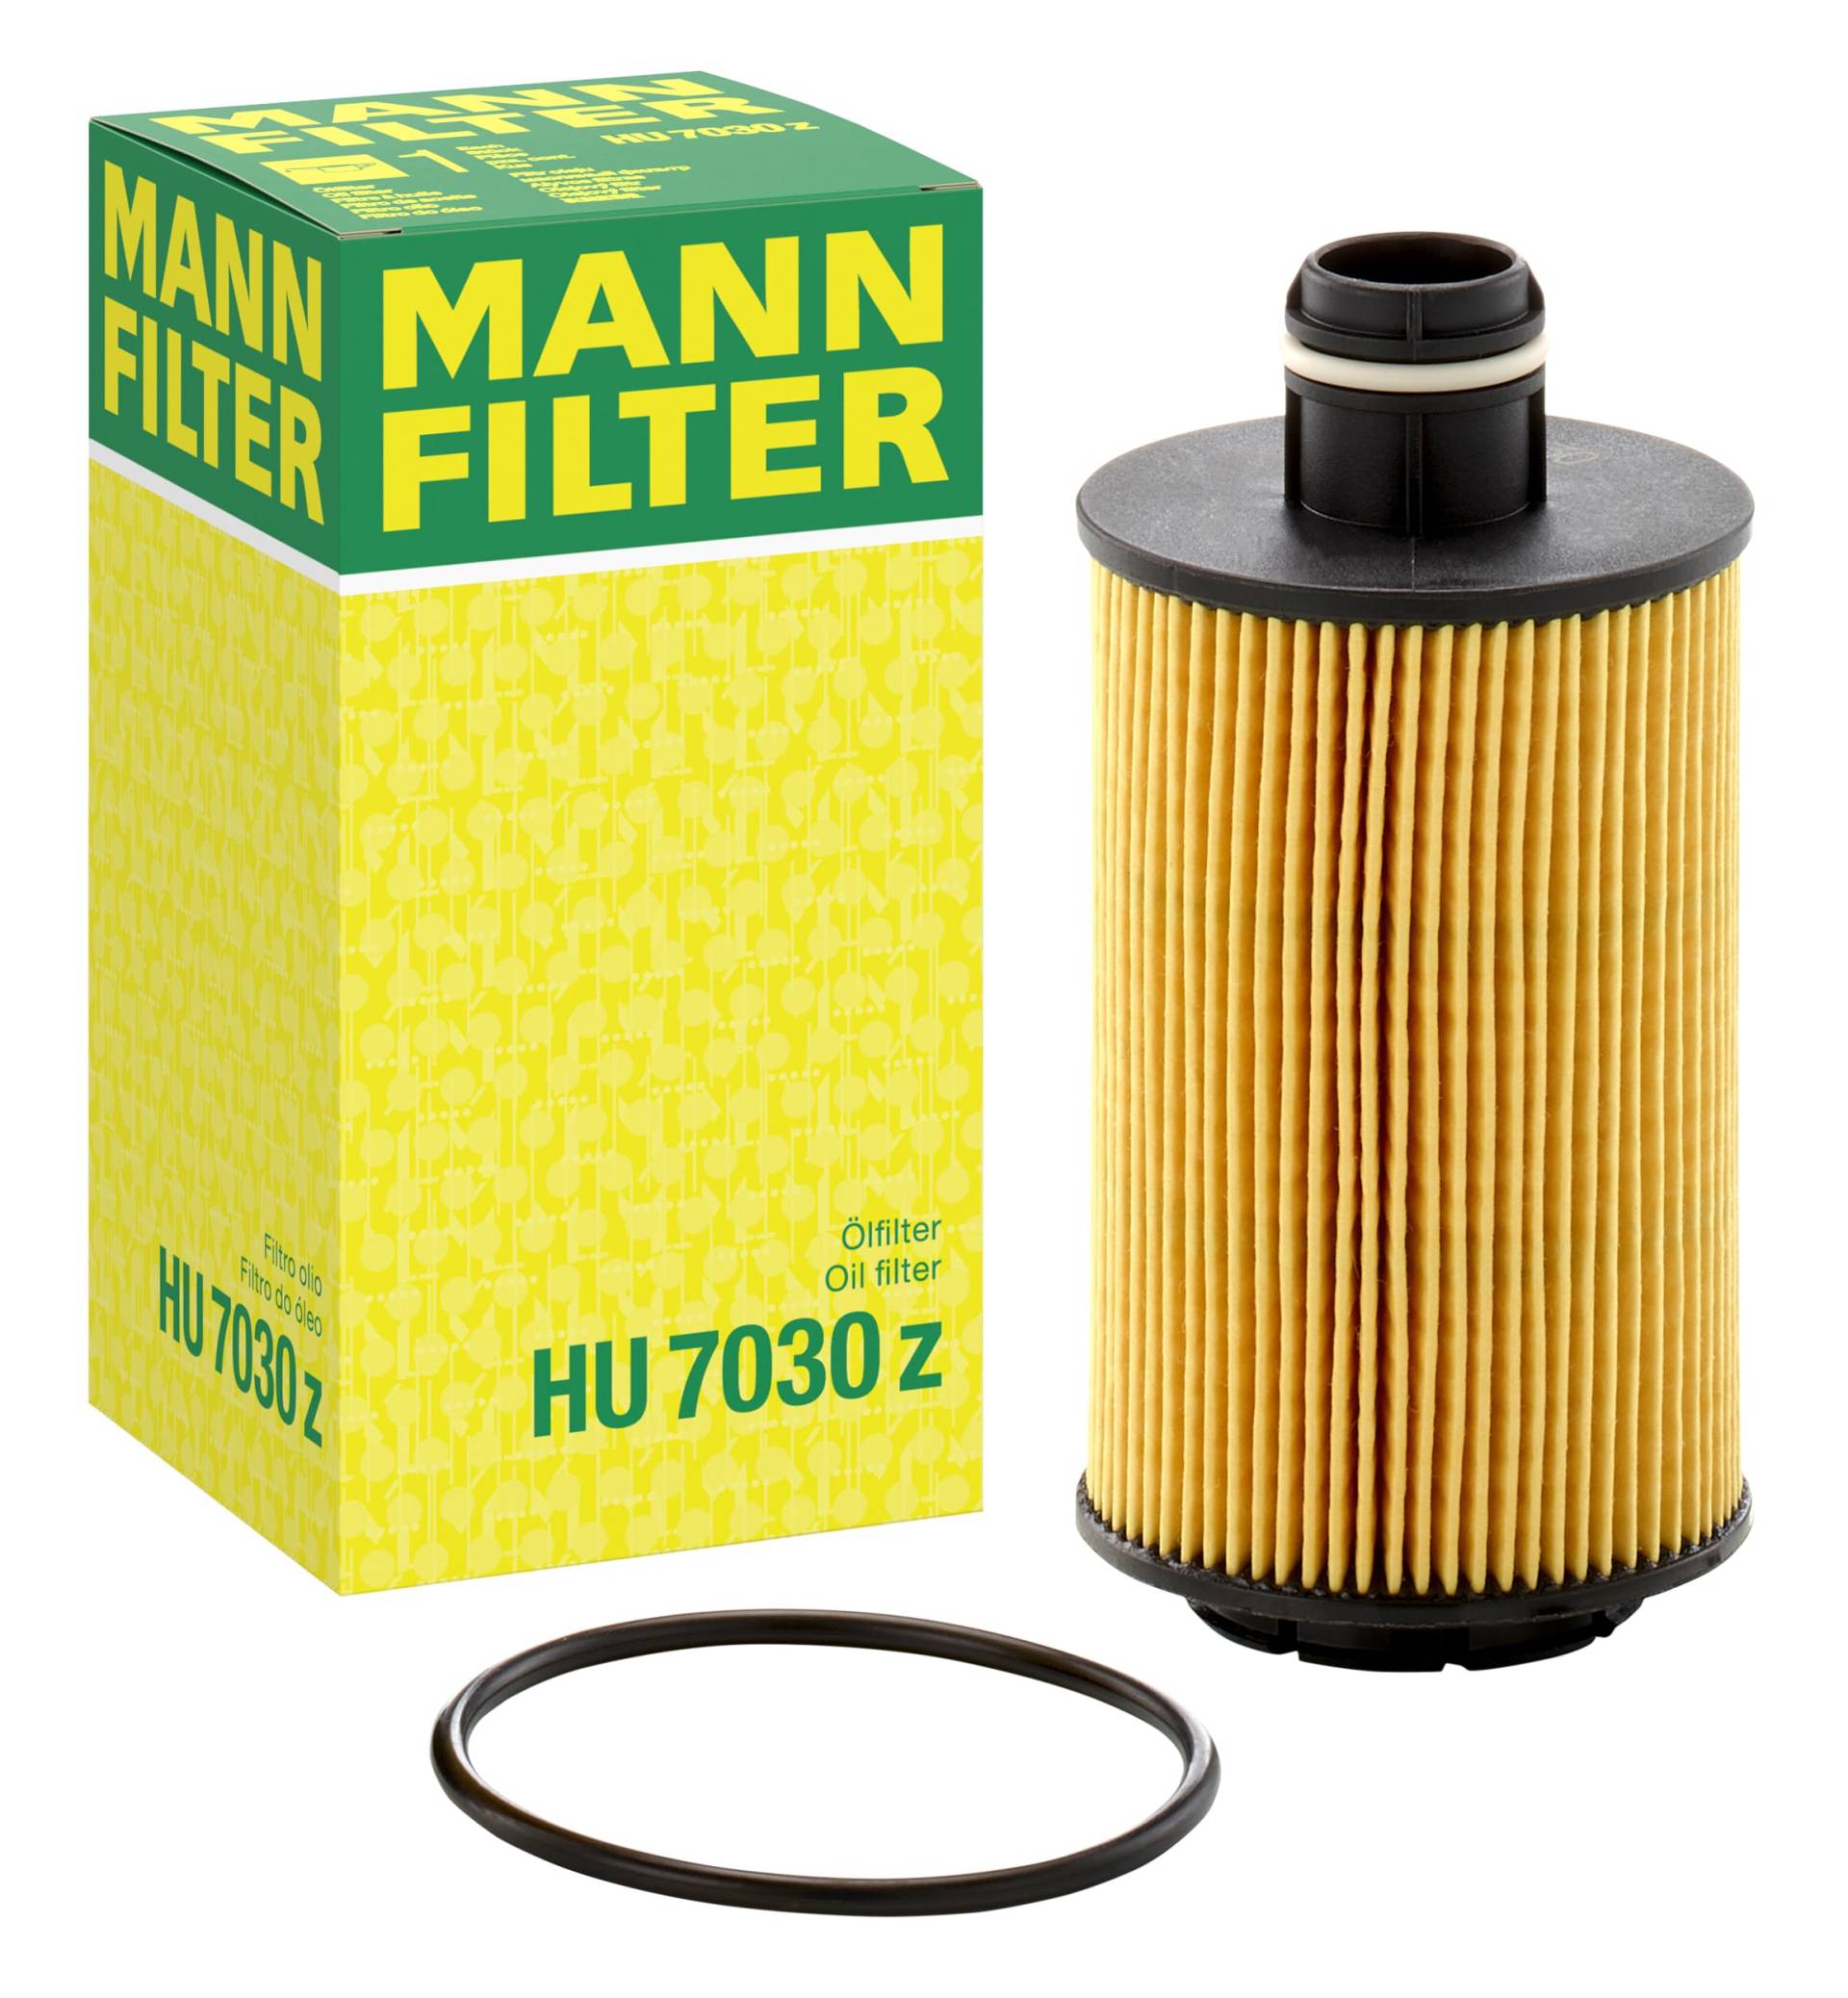 MANN-FILTER HU 7030 Z Ölfilter – Ölfilter Satz mit Dichtung / Dichtungssatz – Für PKW von MANN-FILTER